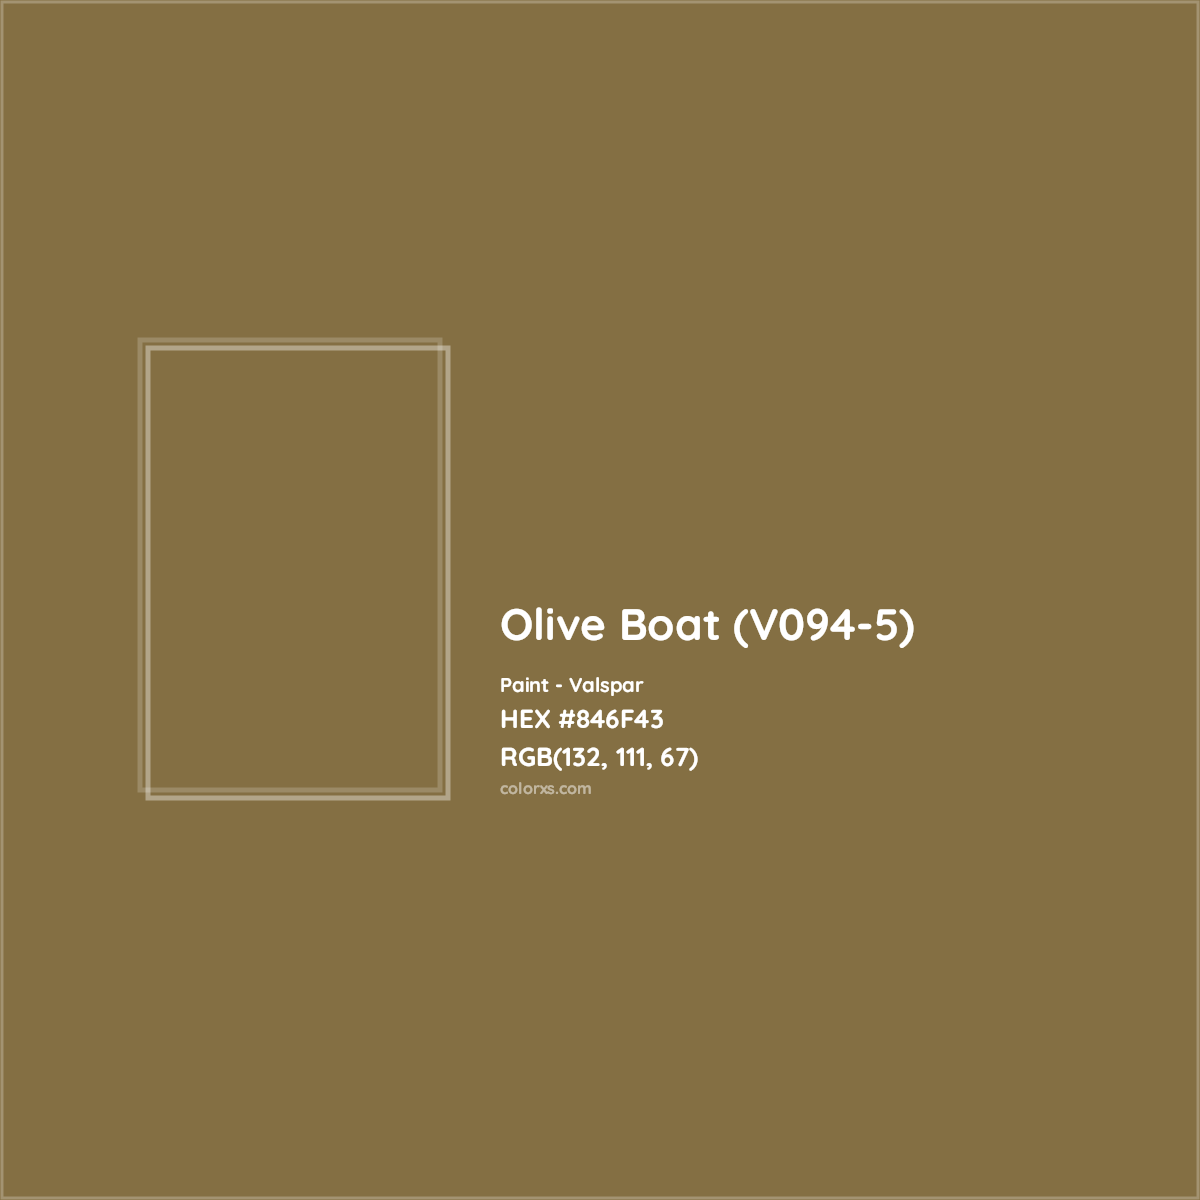 HEX #846F43 Olive Boat (V094-5) Paint Valspar - Color Code